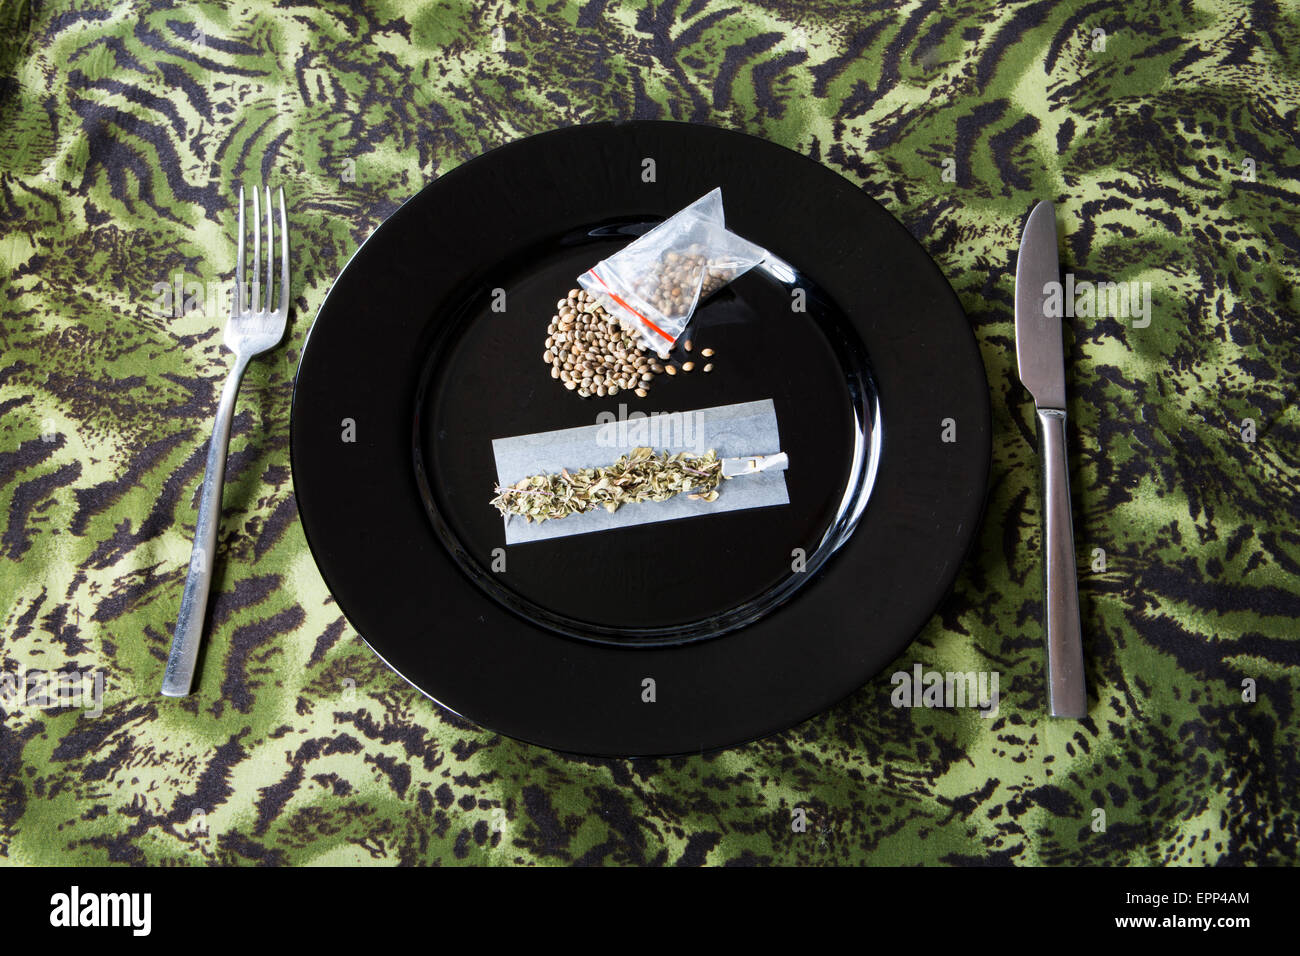 Représentation d'un humoristique inspiré de chanvre avec repas, les graines de chanvre, l'origan, rizlas. Banque D'Images